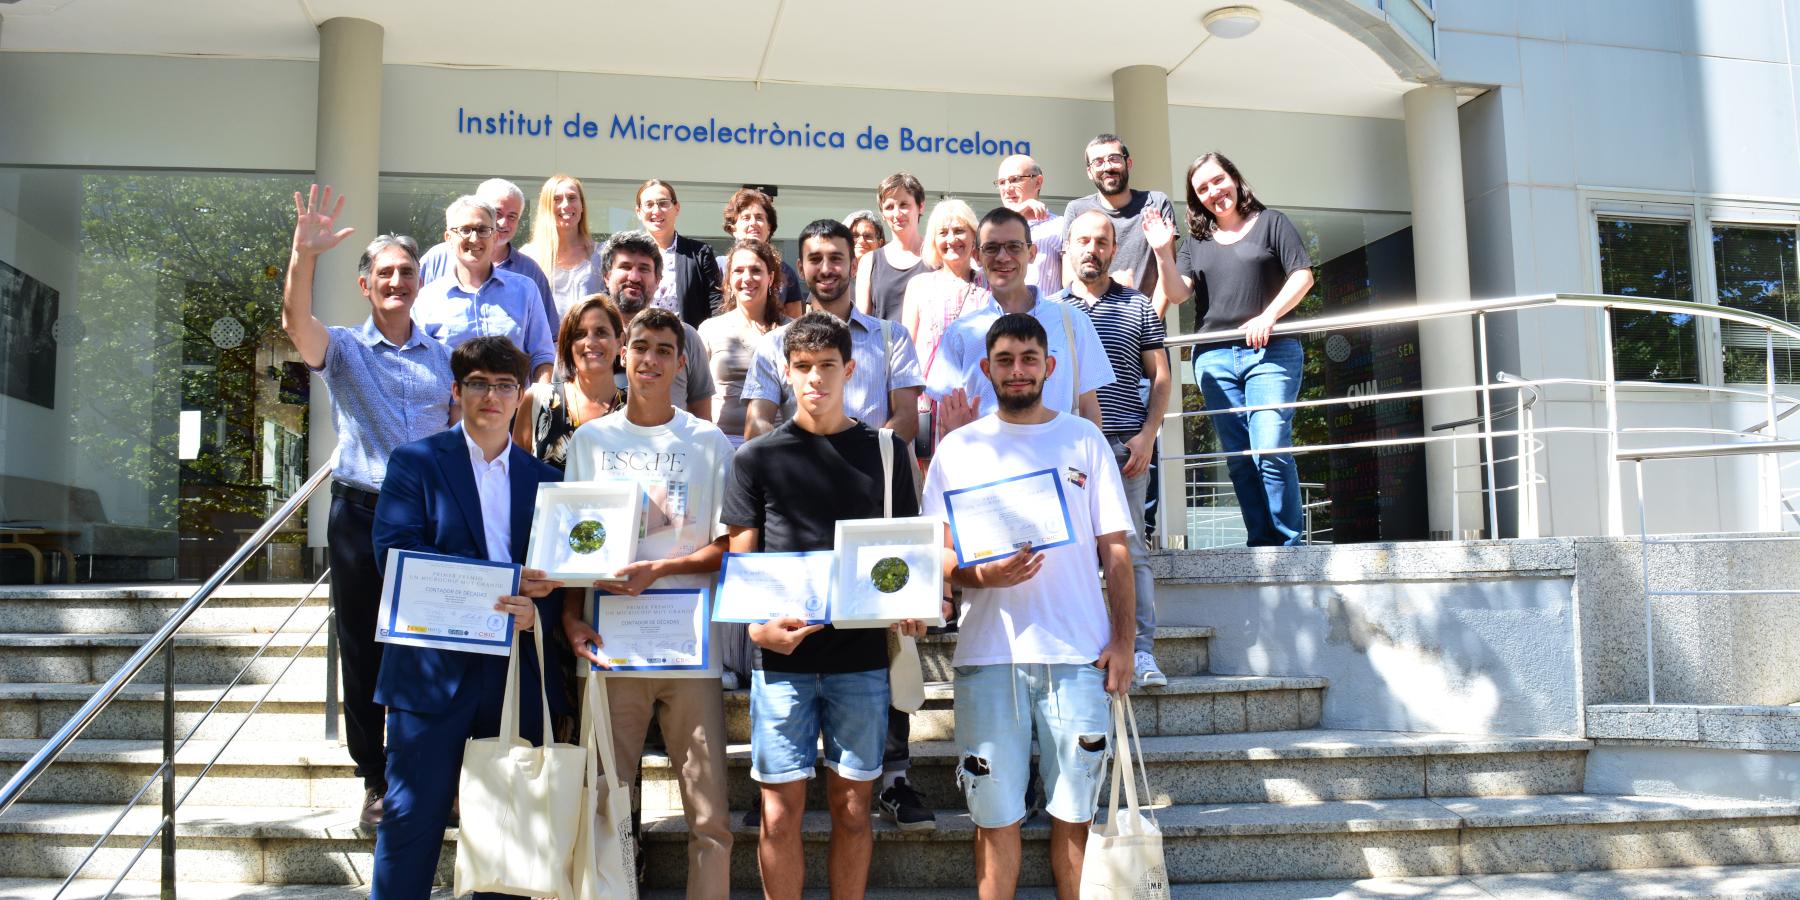 Foto de grupo con los ganadores del concurso "Un microchip muy grande" y el equipo de trabajo de divulgación